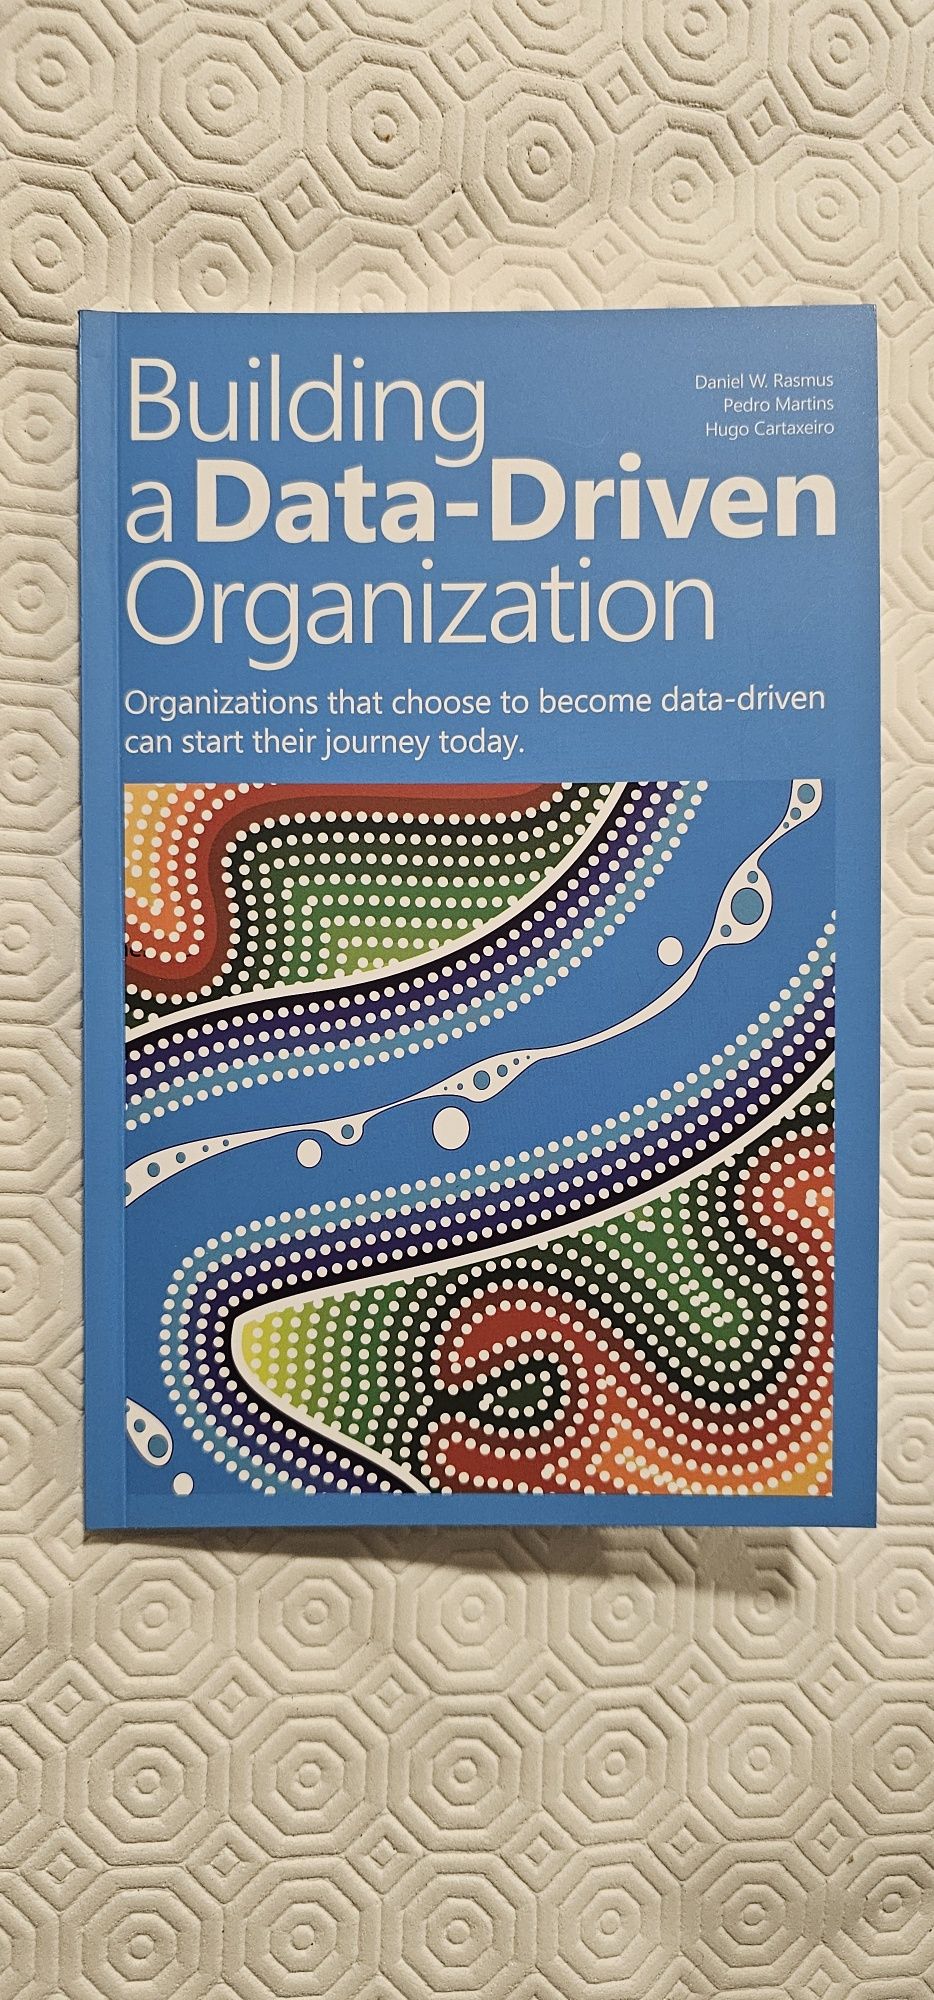 Livro "Building a Data-Driven Organization"